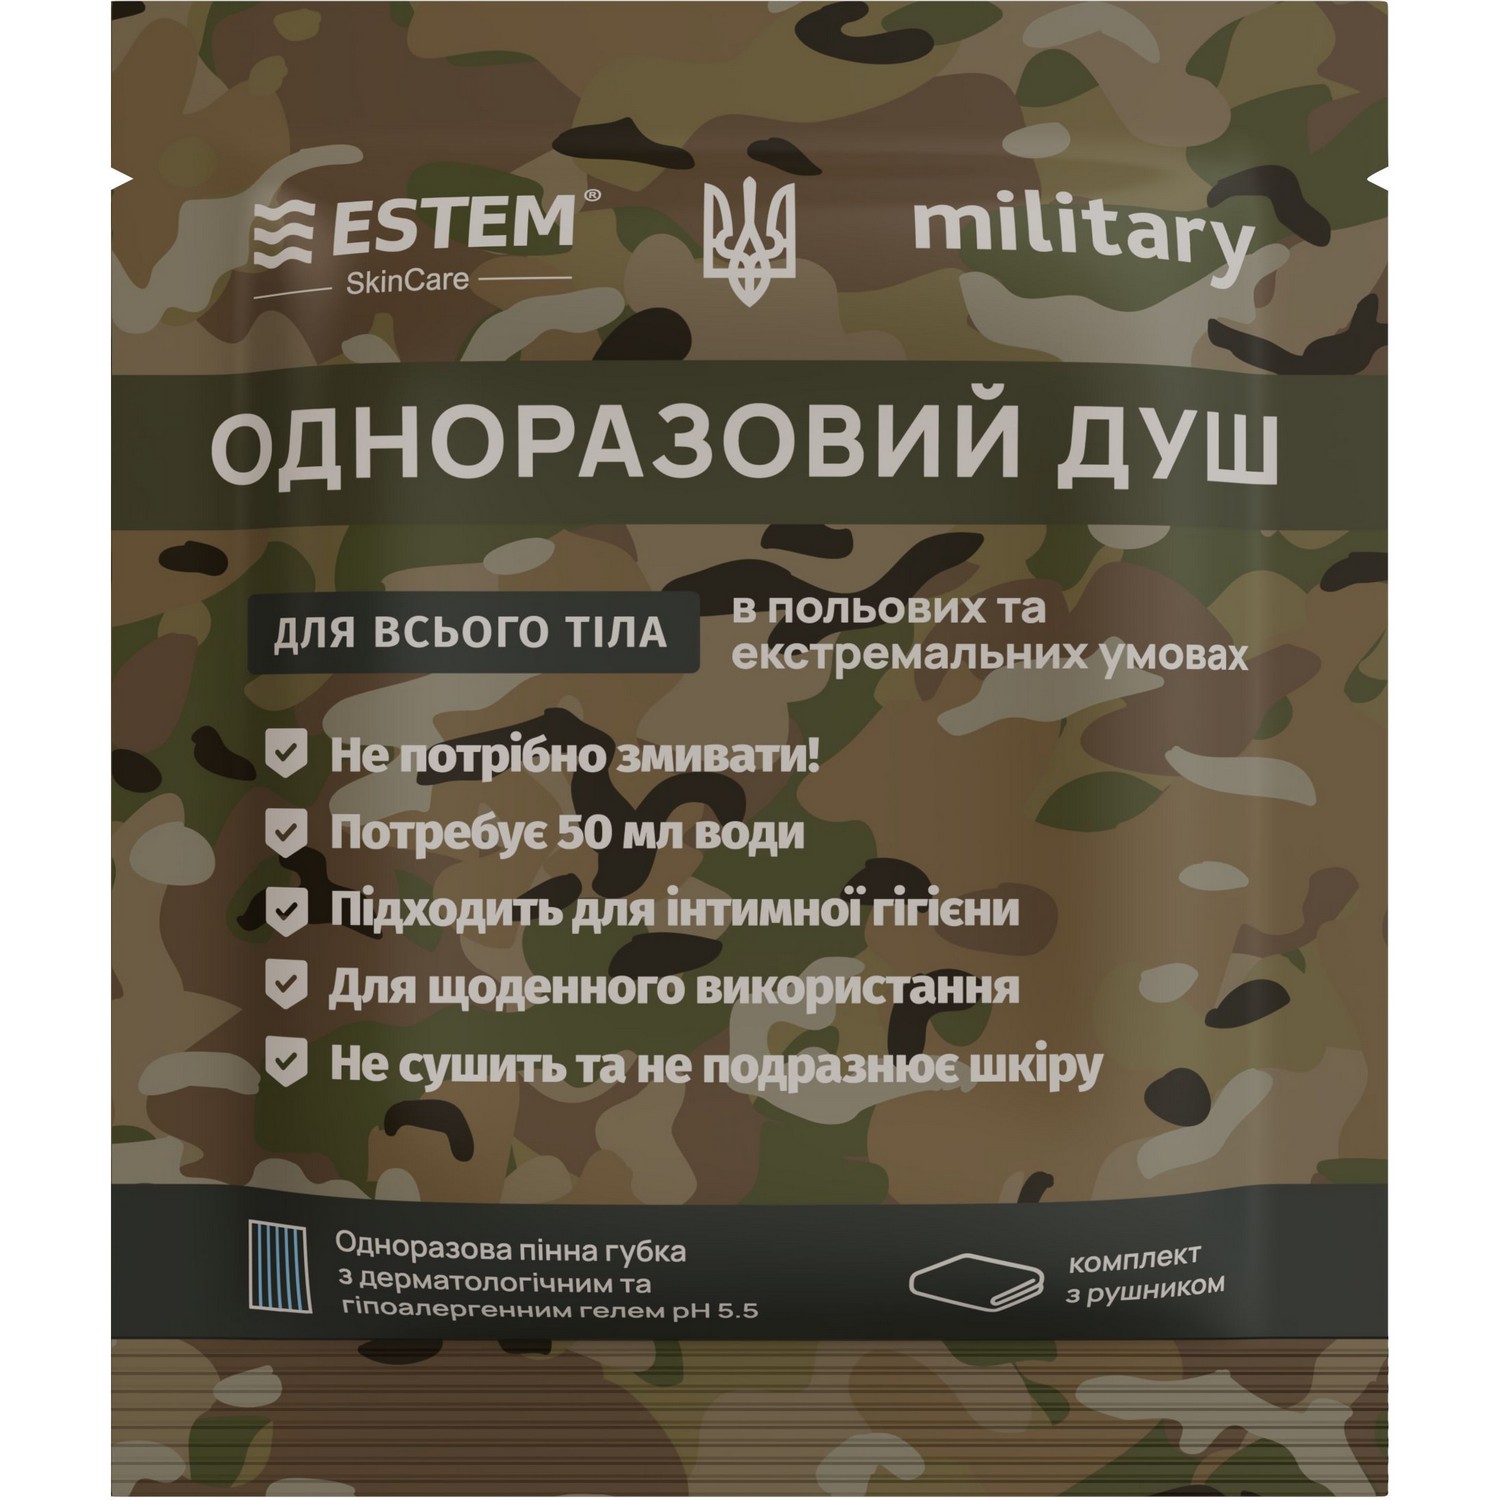 Одноразовий душ для військових Estem Military - фото 1